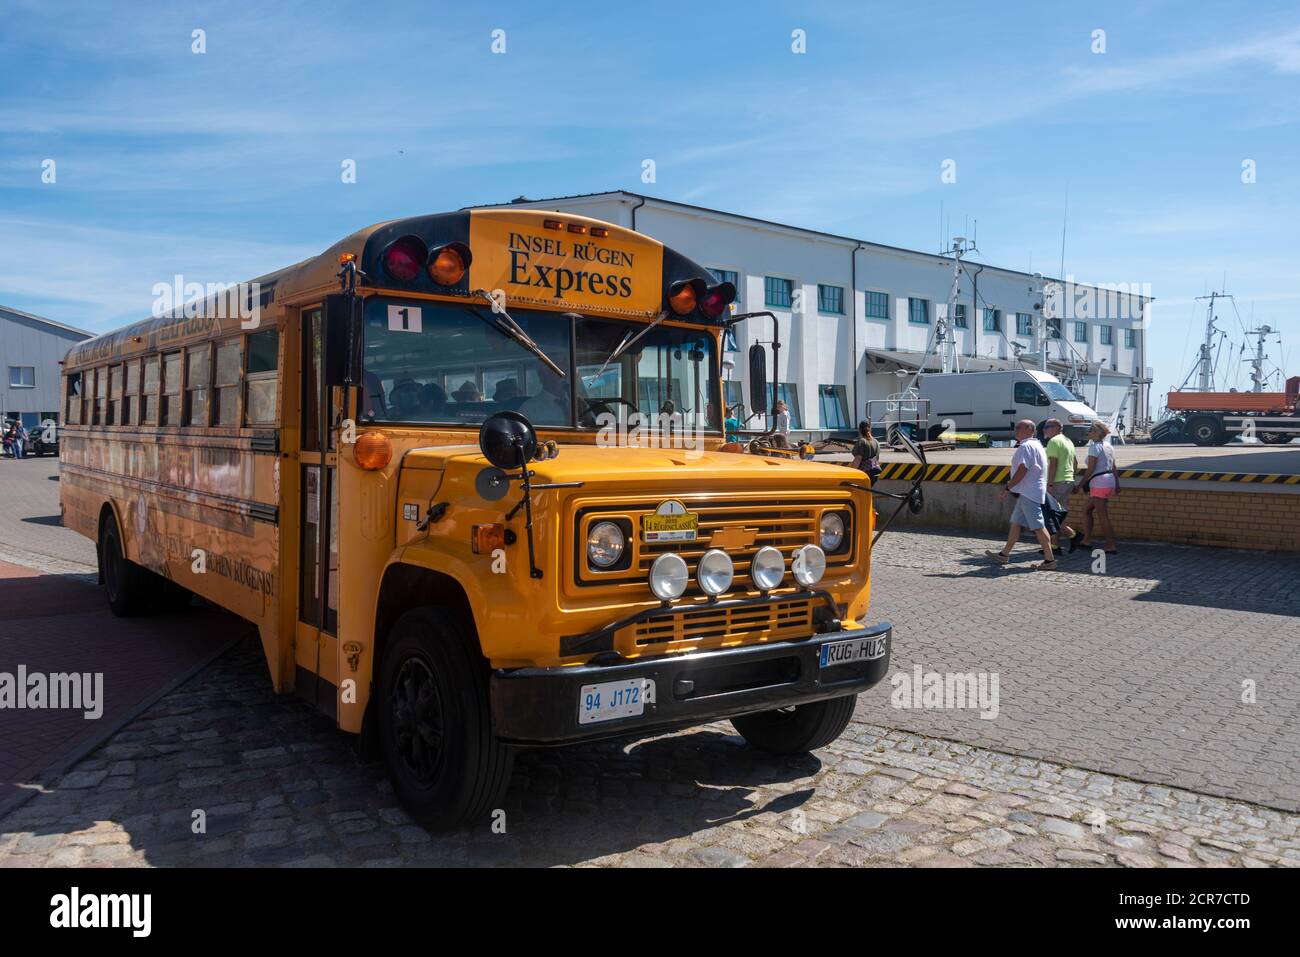 Germania, Meclemburgo-Pomerania occidentale, Sassnitz, autobus della vecchia scuola dagli Stati Uniti, oggi autobus turistico, isola Rügen Express, Mar Baltico Foto Stock